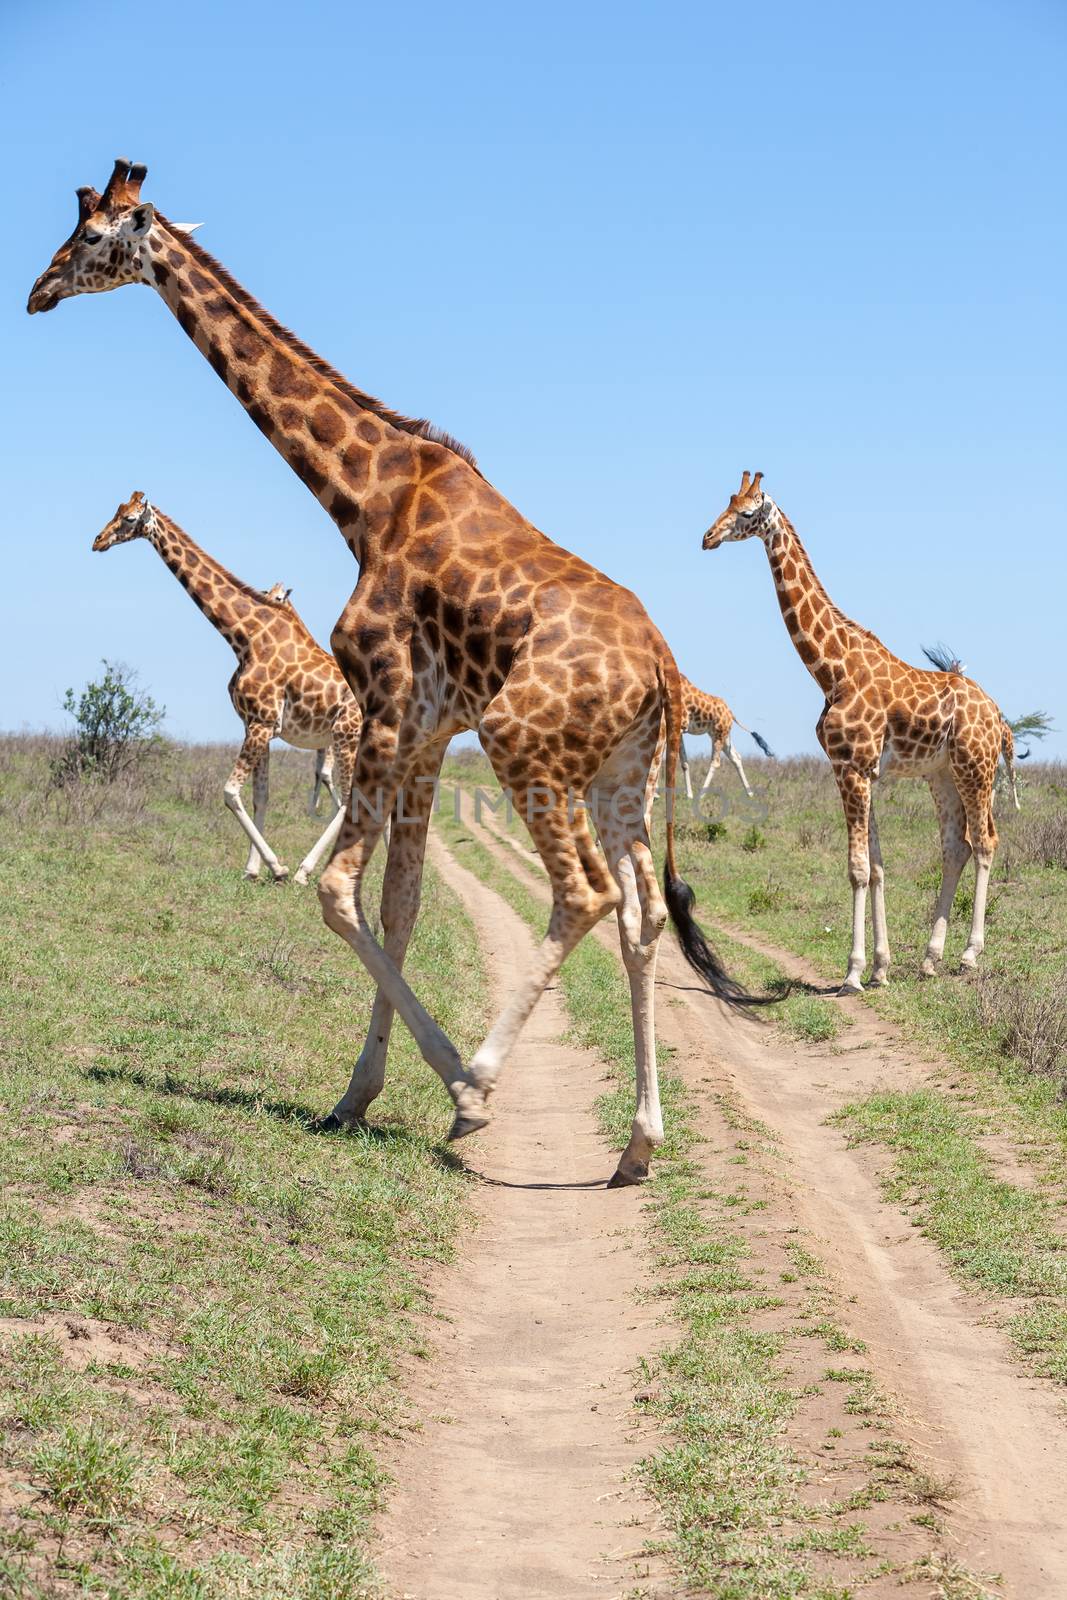 Wild giraffes herd in savannah, Kenya, Africa